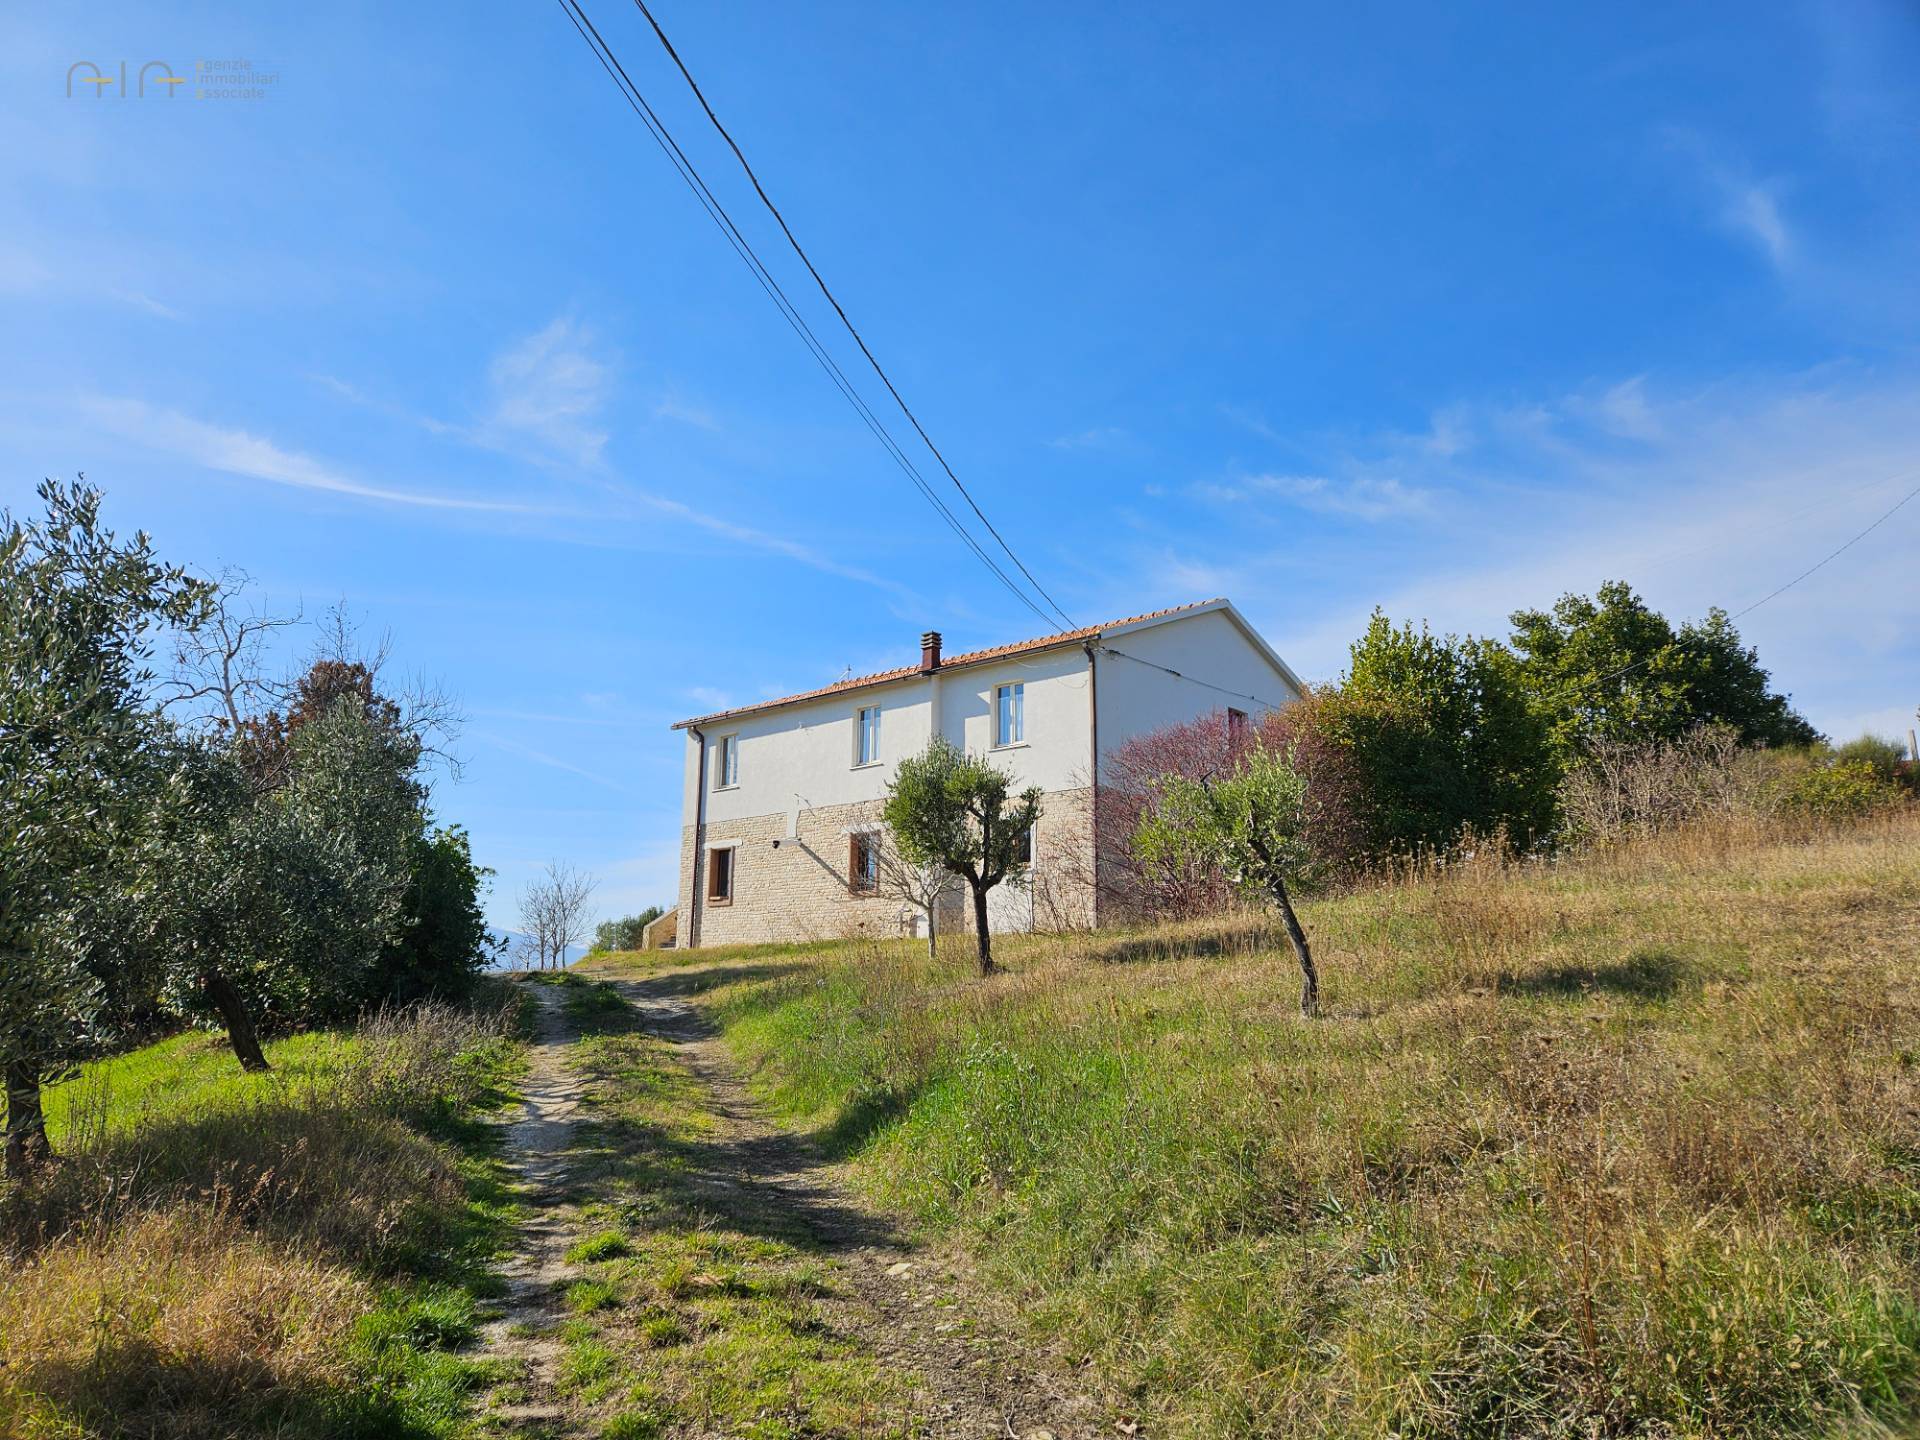 Rustico / Casale in vendita a Cossignano, 10 locali, zona Località: Collinare/Campagna, prezzo € 290.000 | PortaleAgenzieImmobiliari.it